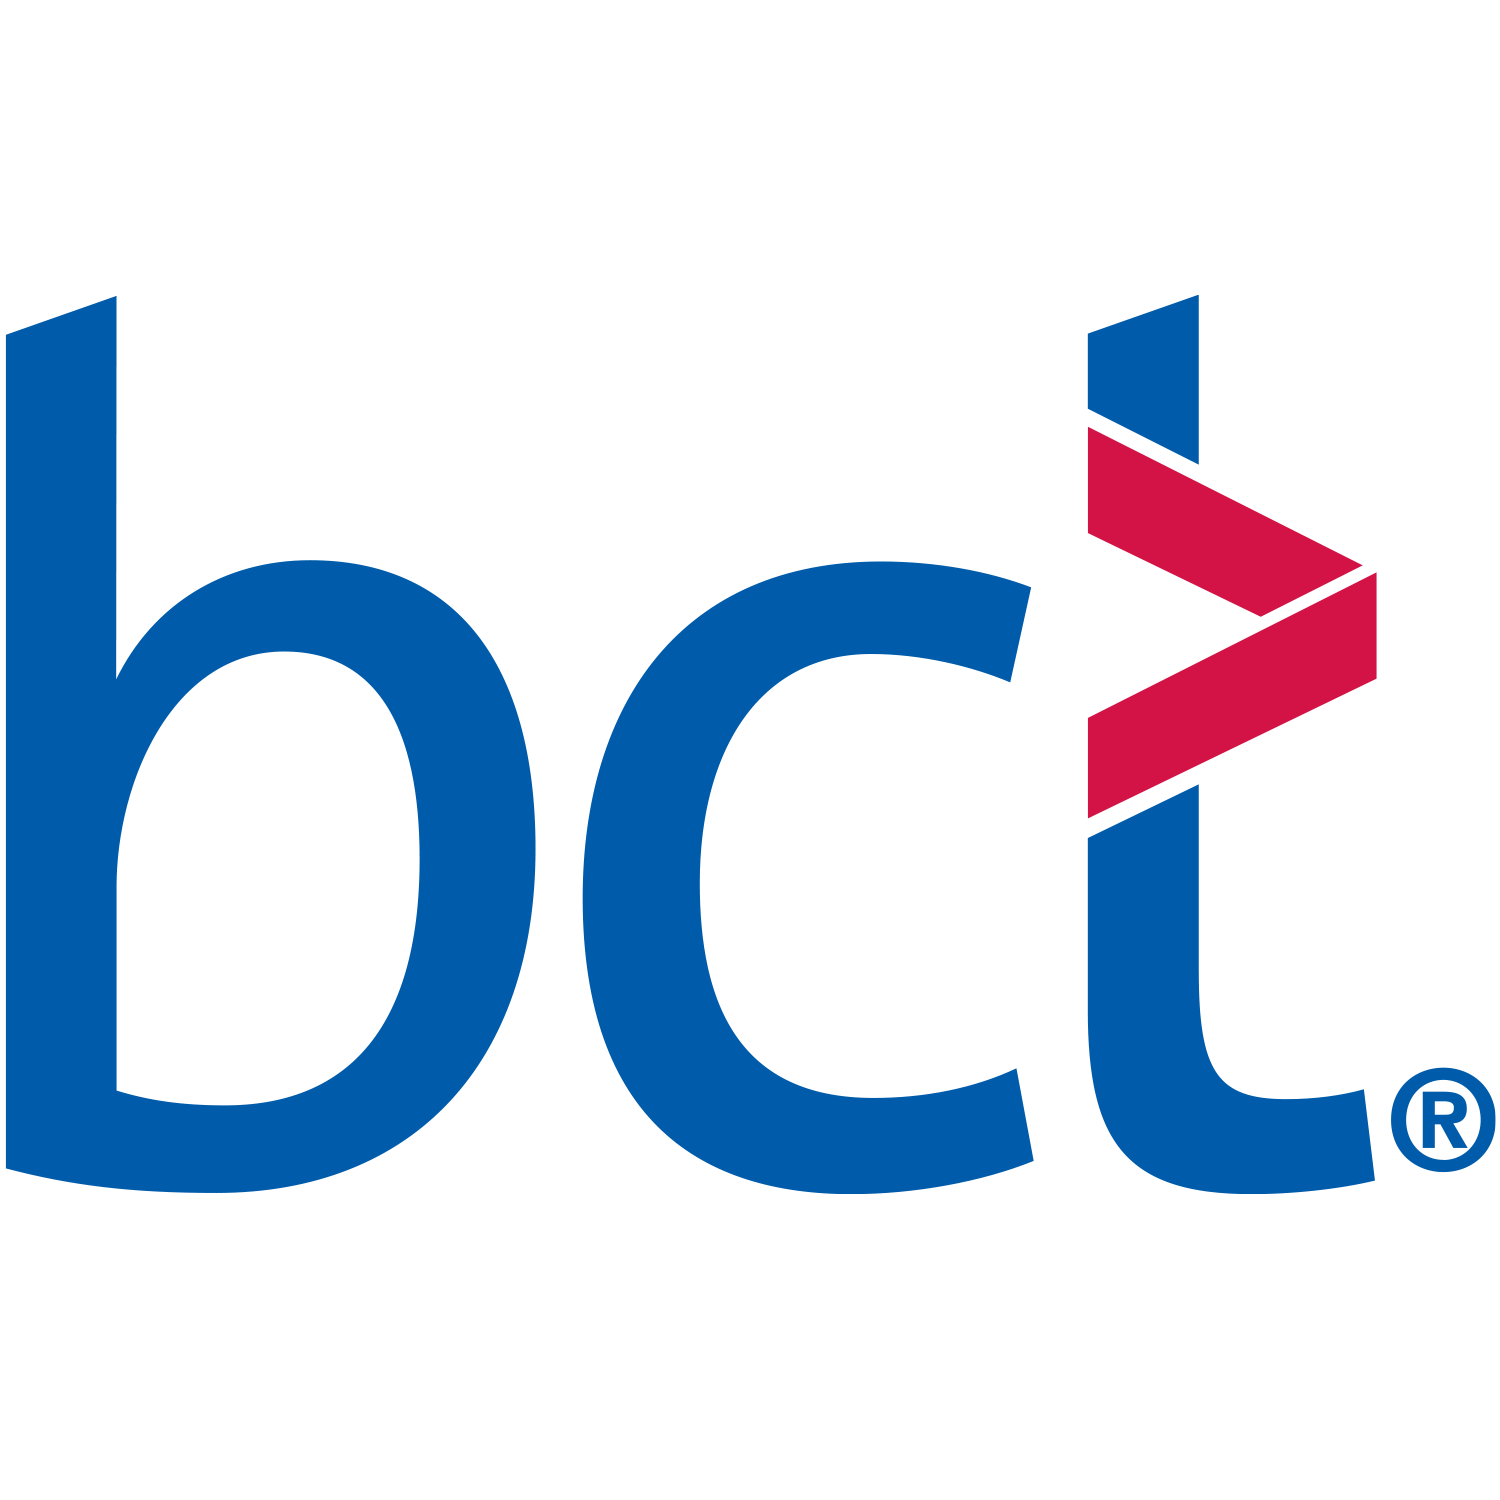 BCT logo